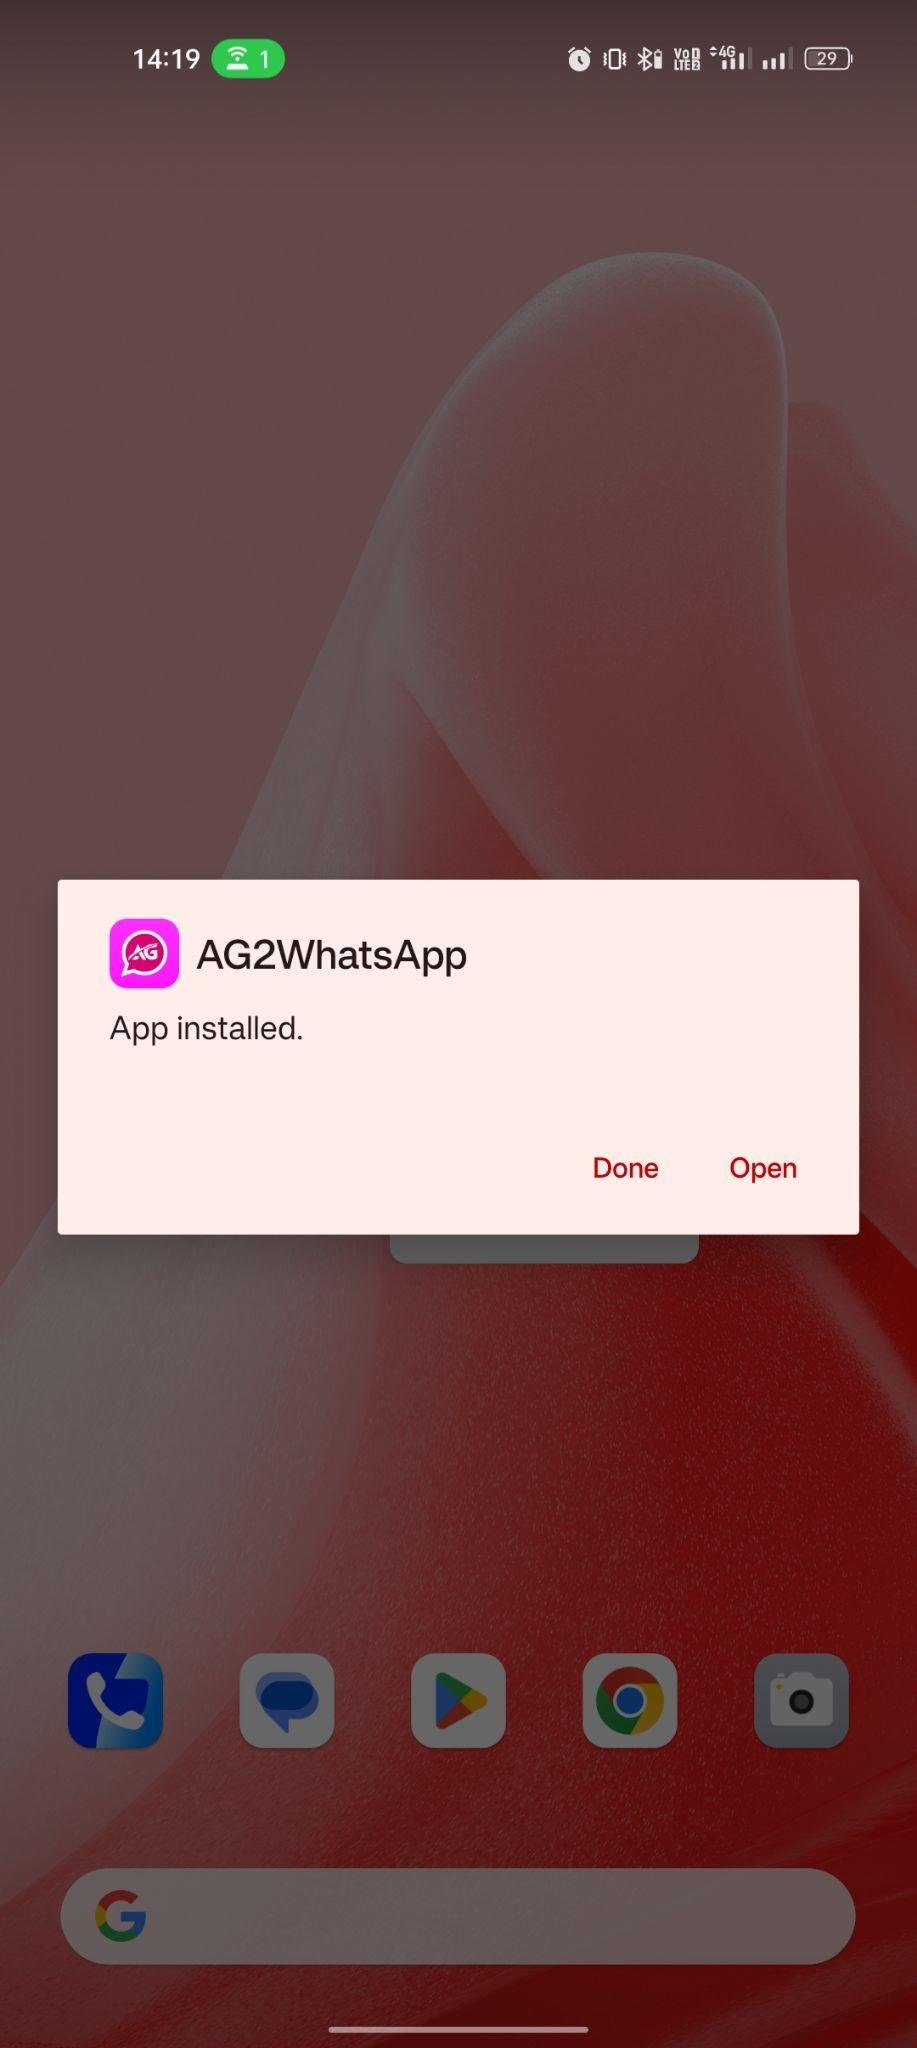 AG2 WhatsApp apk installed